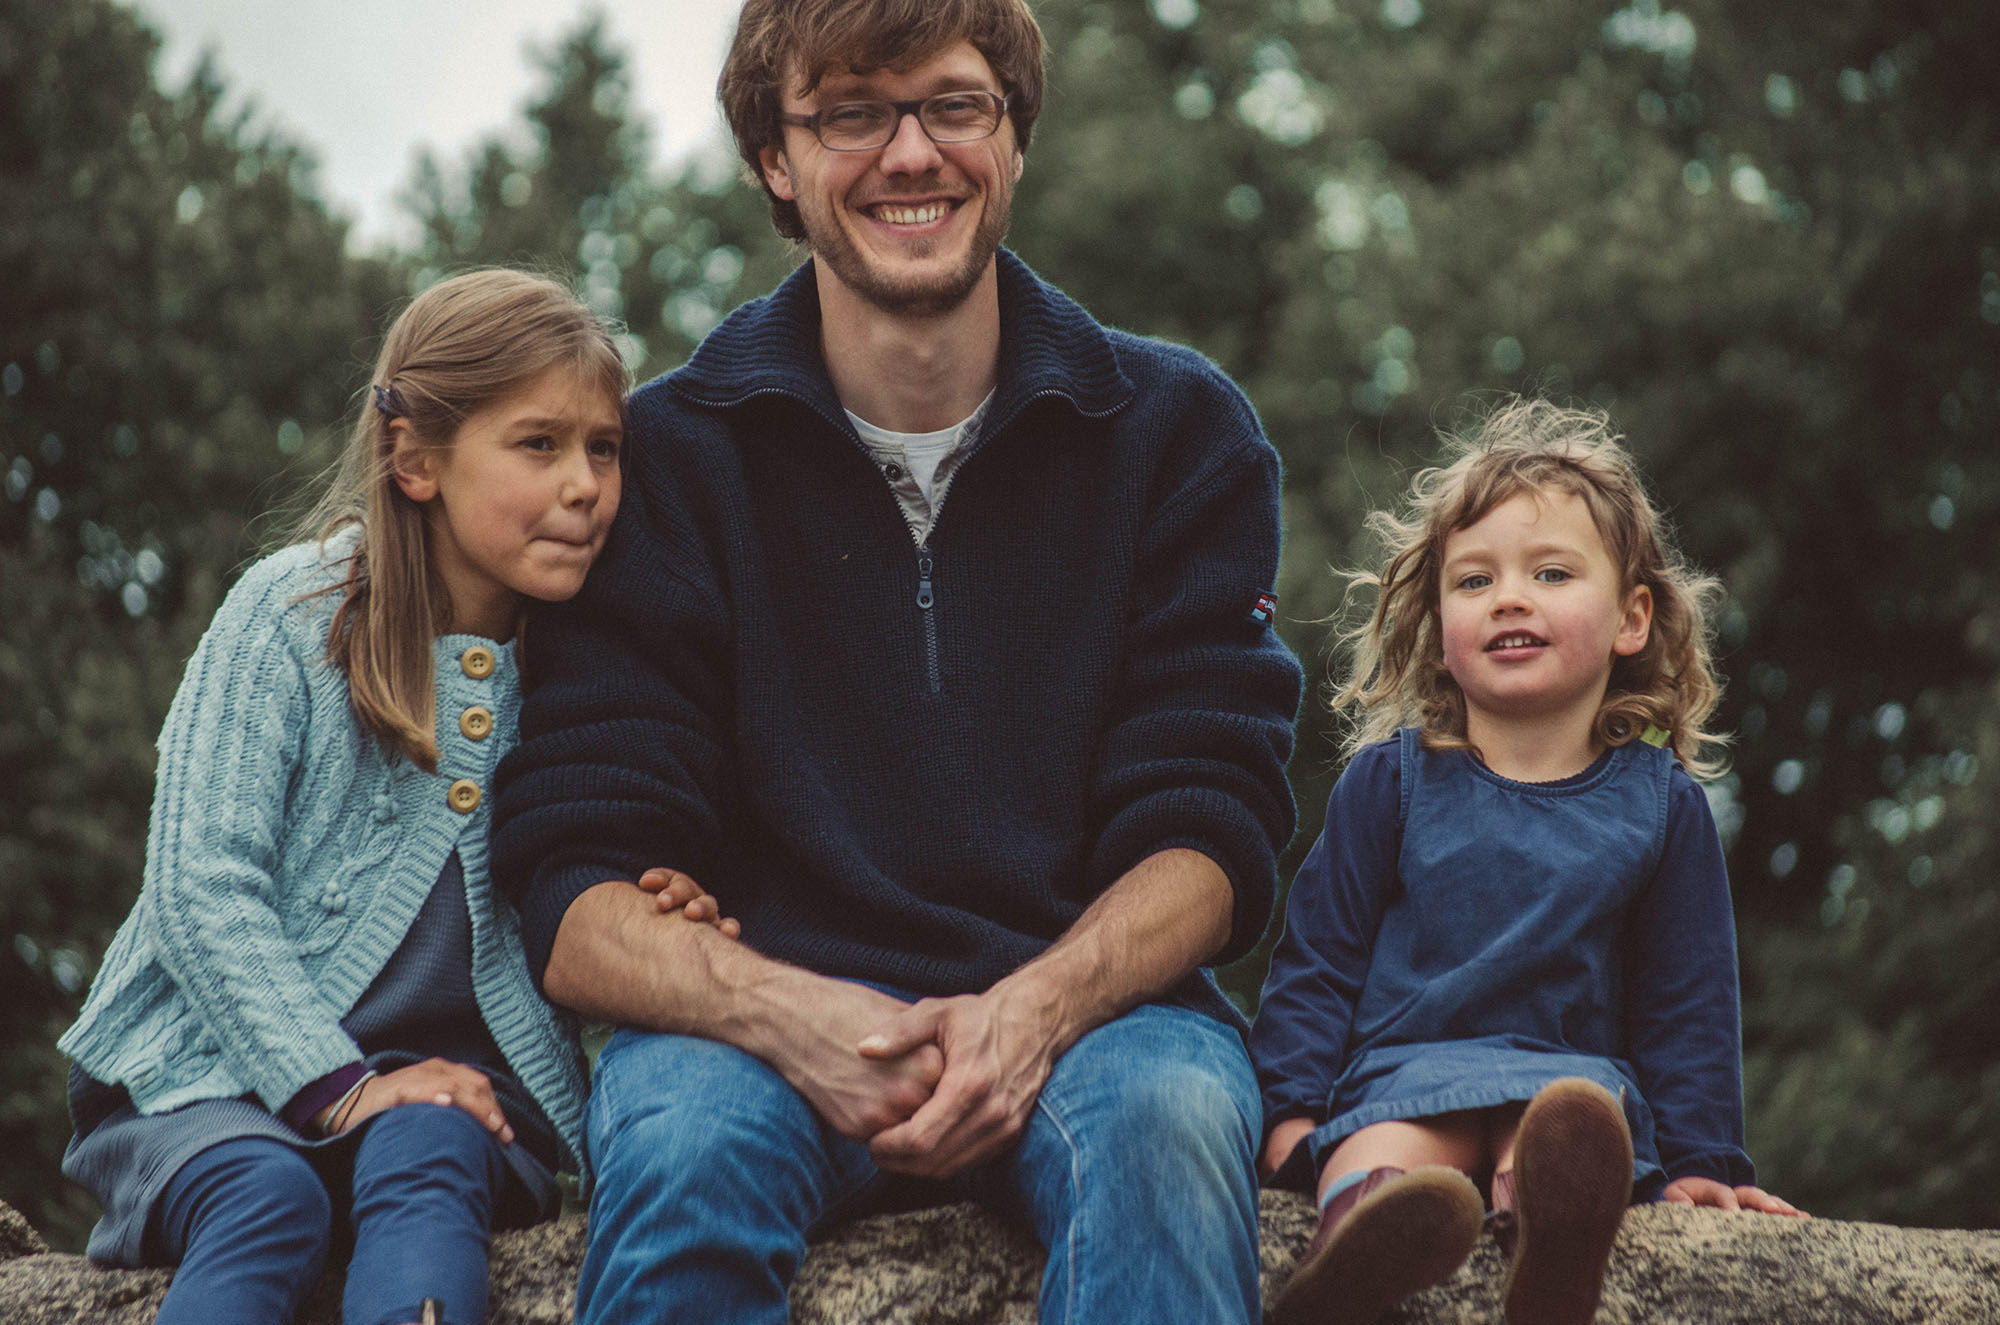 Familien fotograf in basel, Vater mit Töchtern natürliches Familienfoto